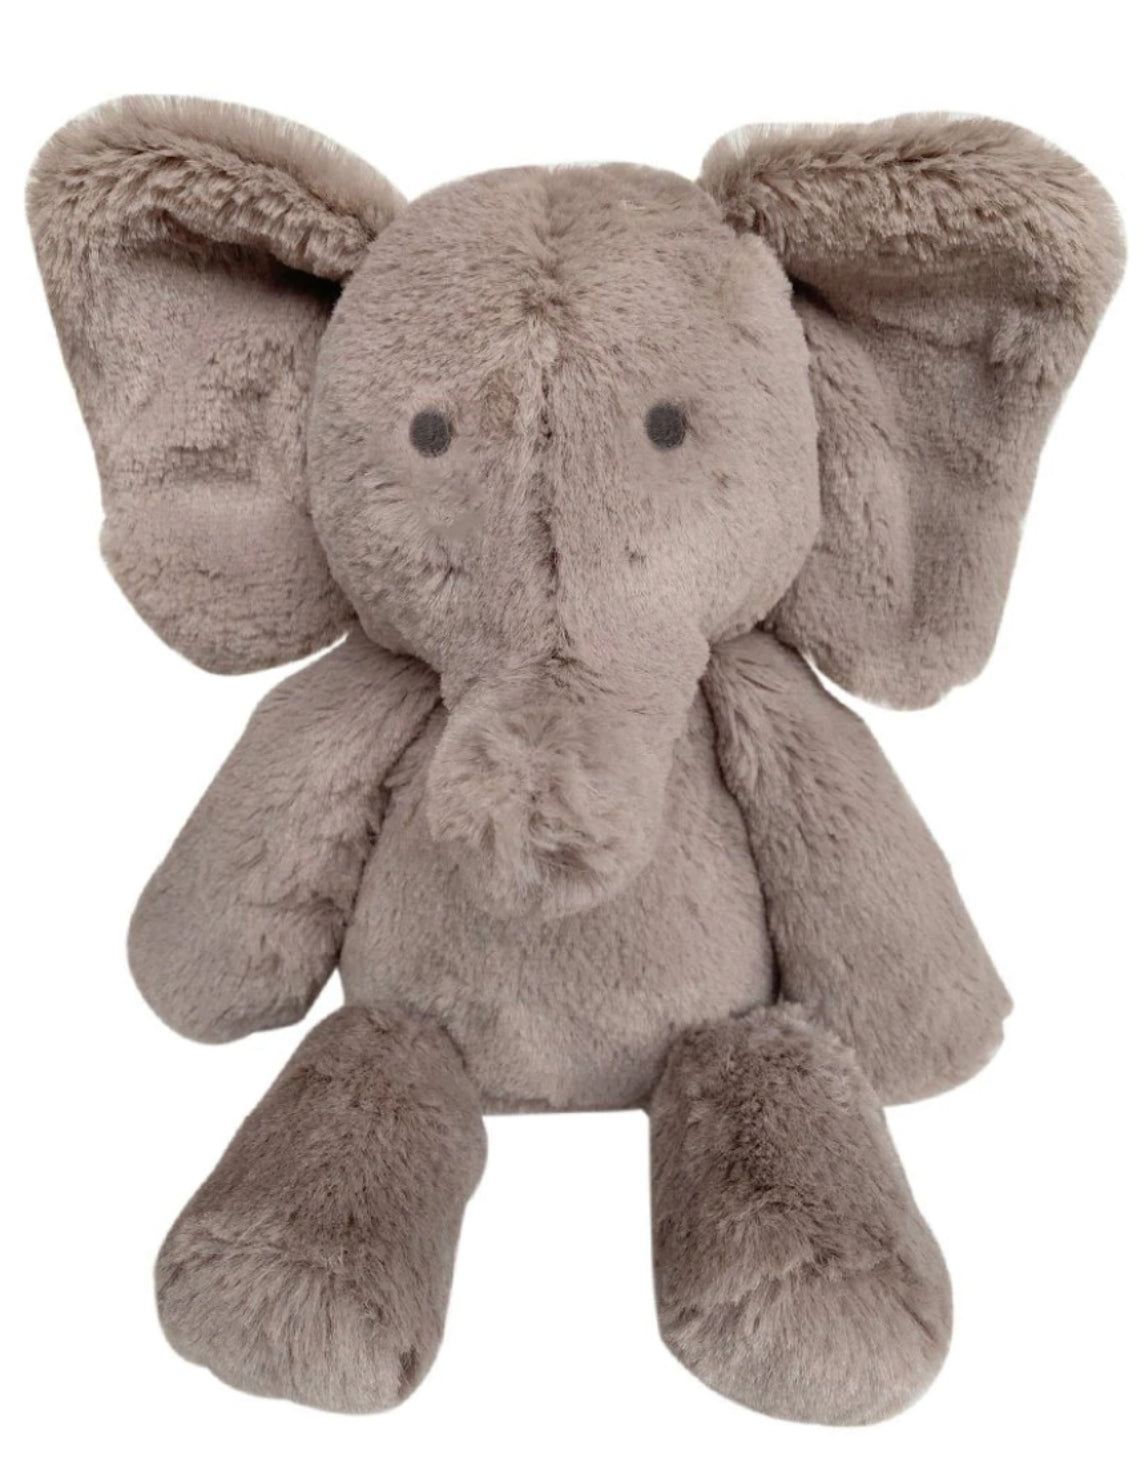 Elly Elephant